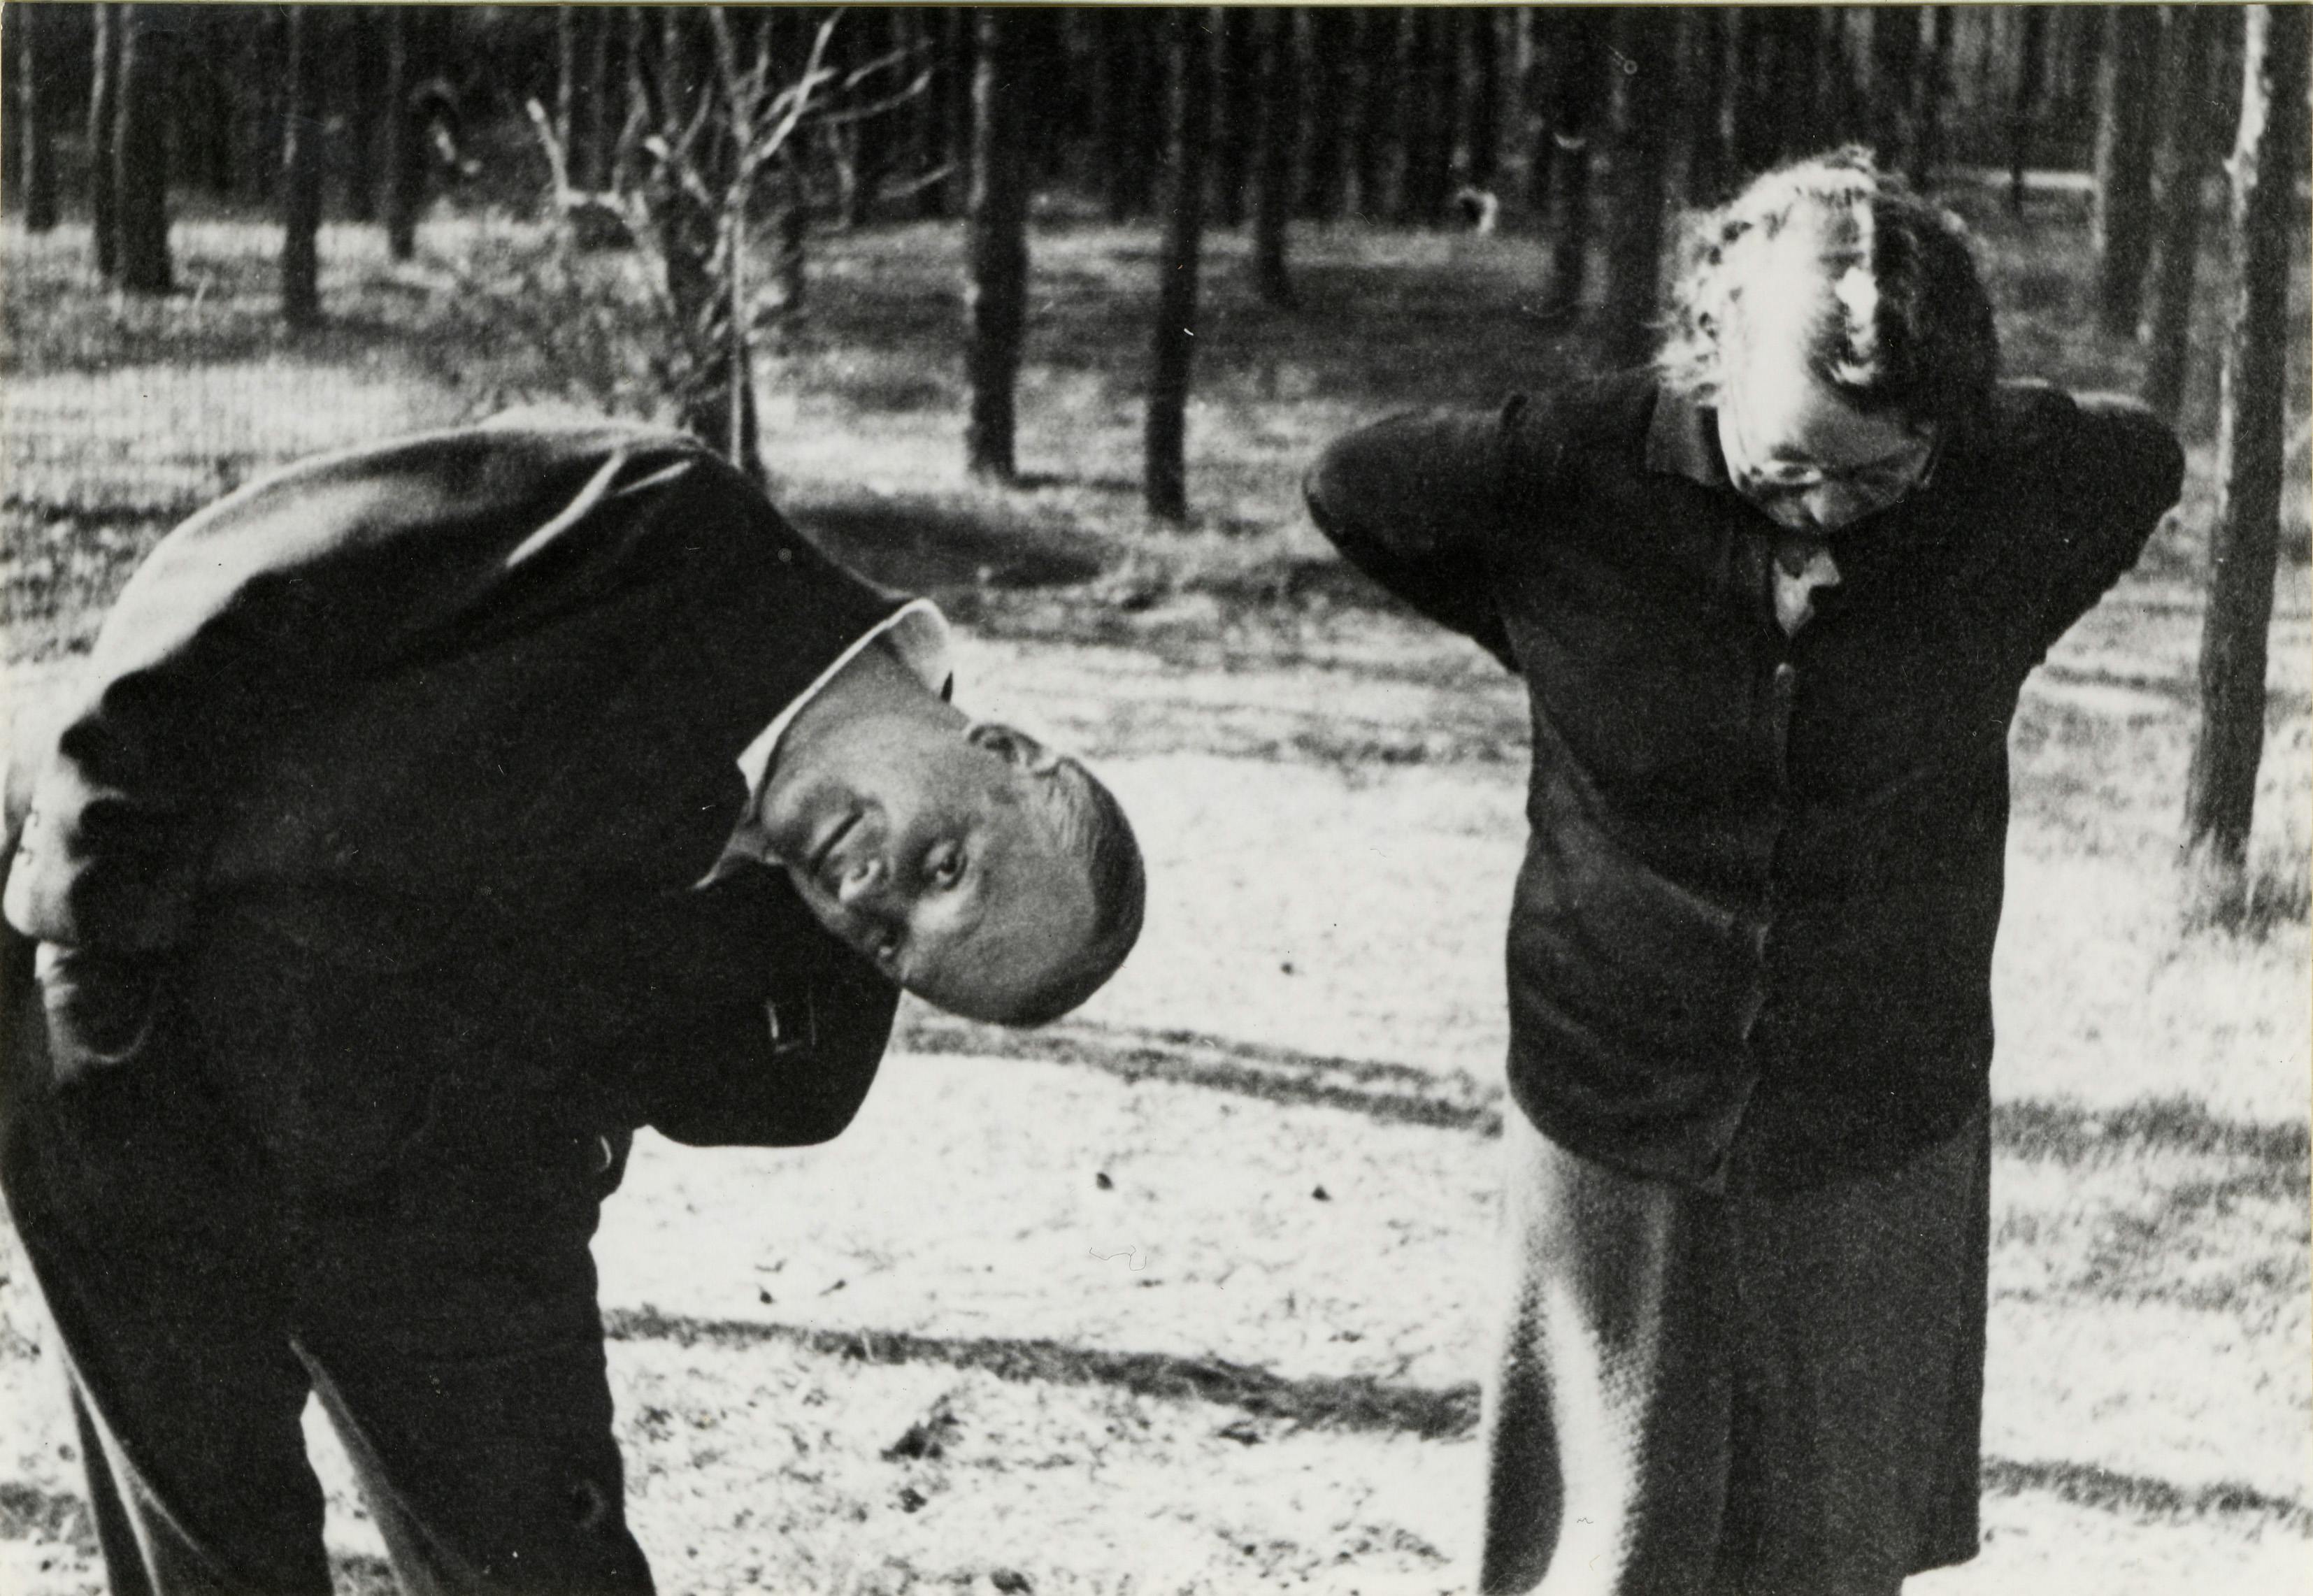 Paul und Lily Klee in Dessau, 1933